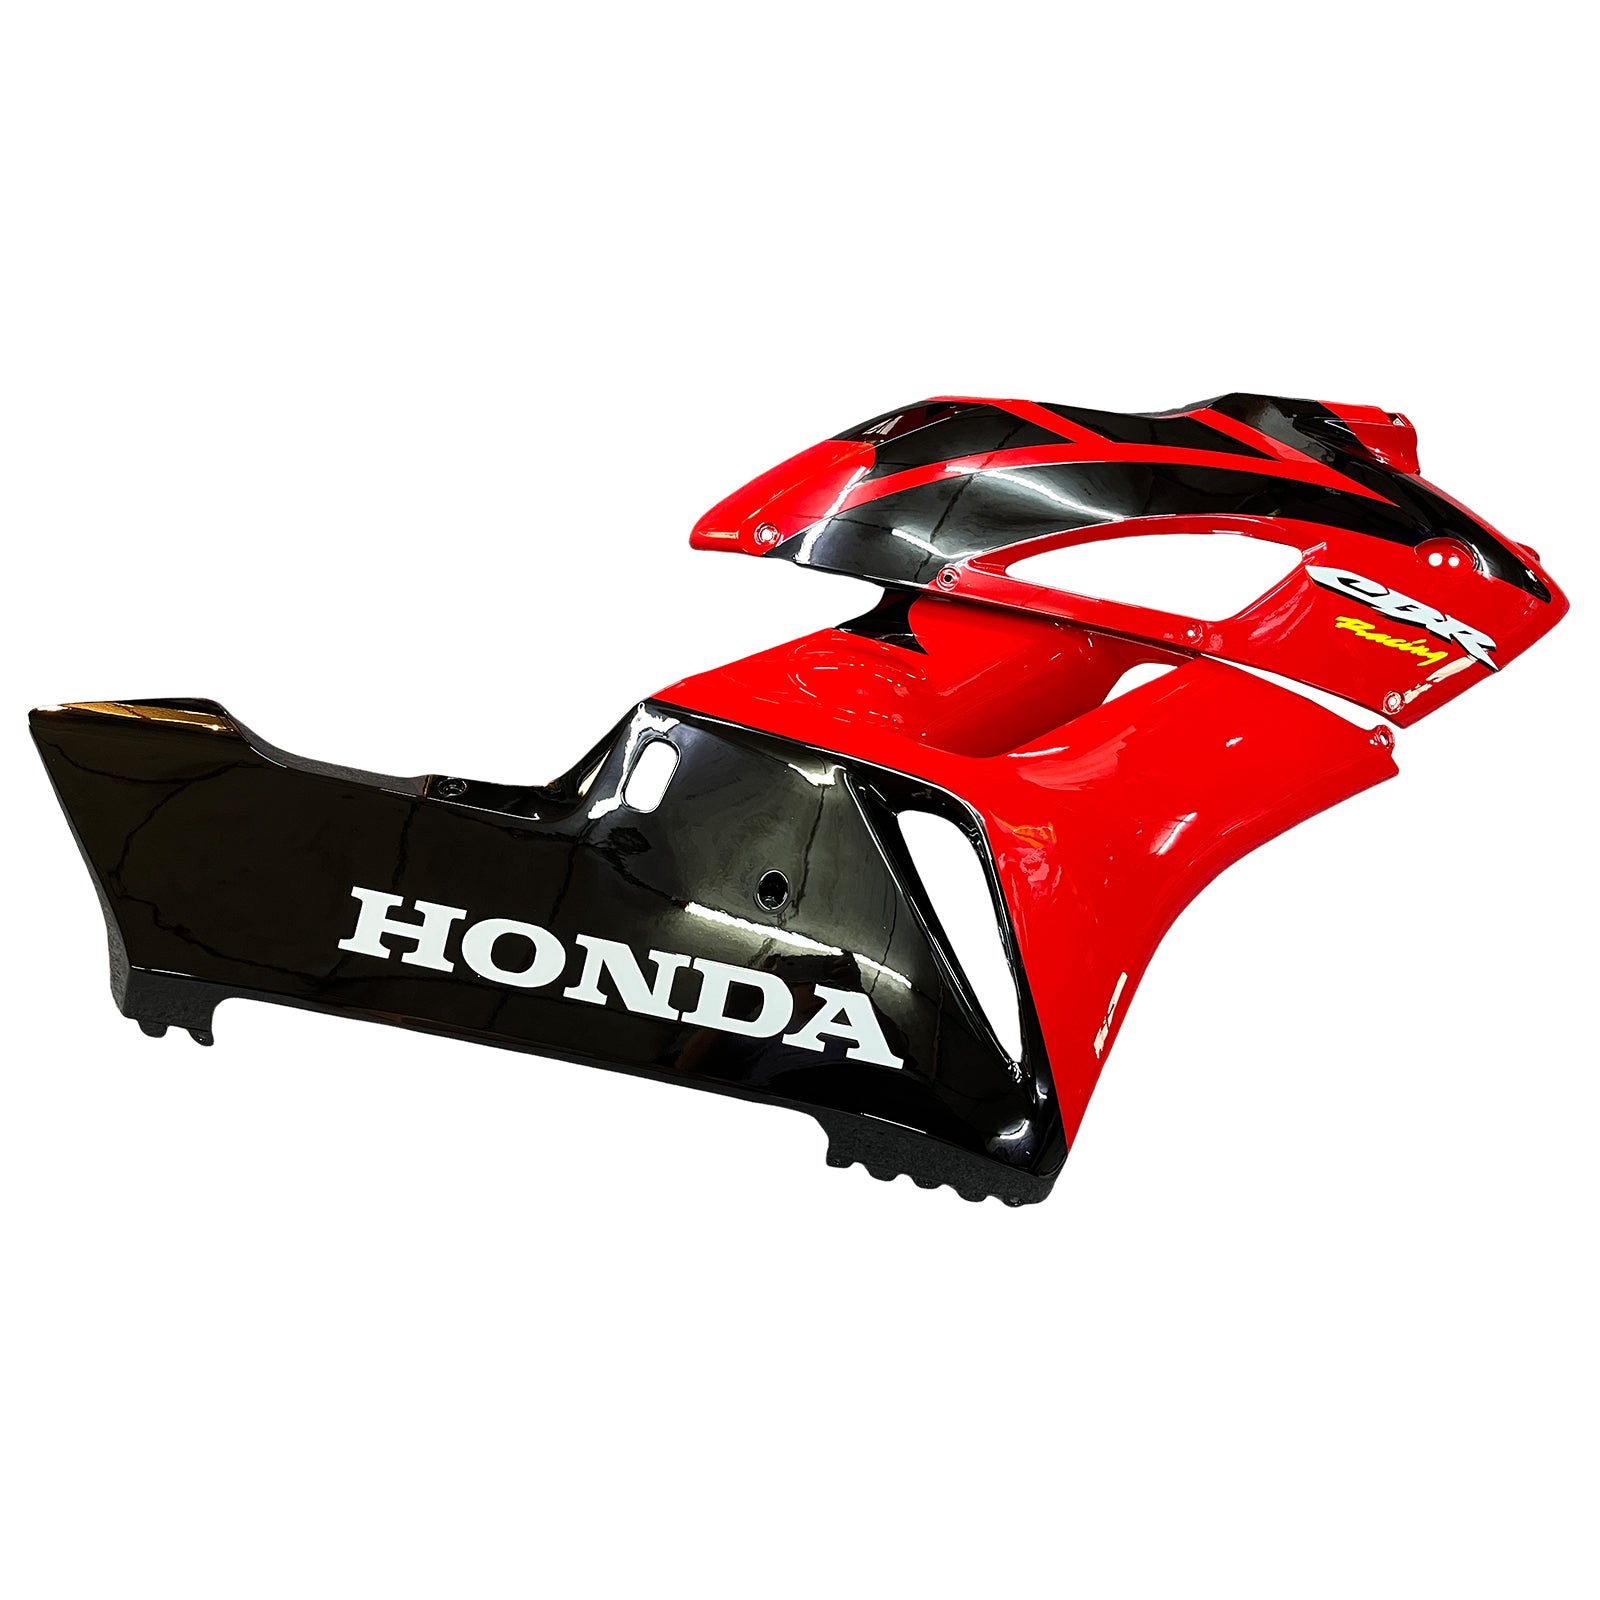 Amotopart Fairings Honda 1000RR 2004-2005 Fairing Red Black CBR Racing Fairing Kit